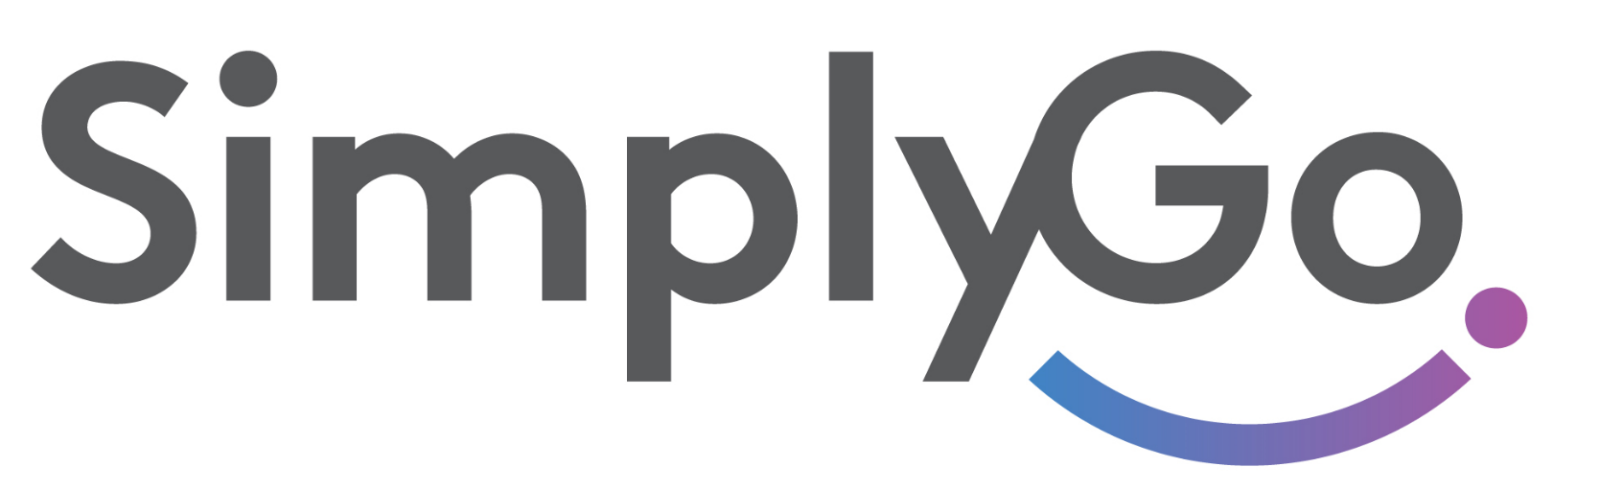 SimplyGo logo